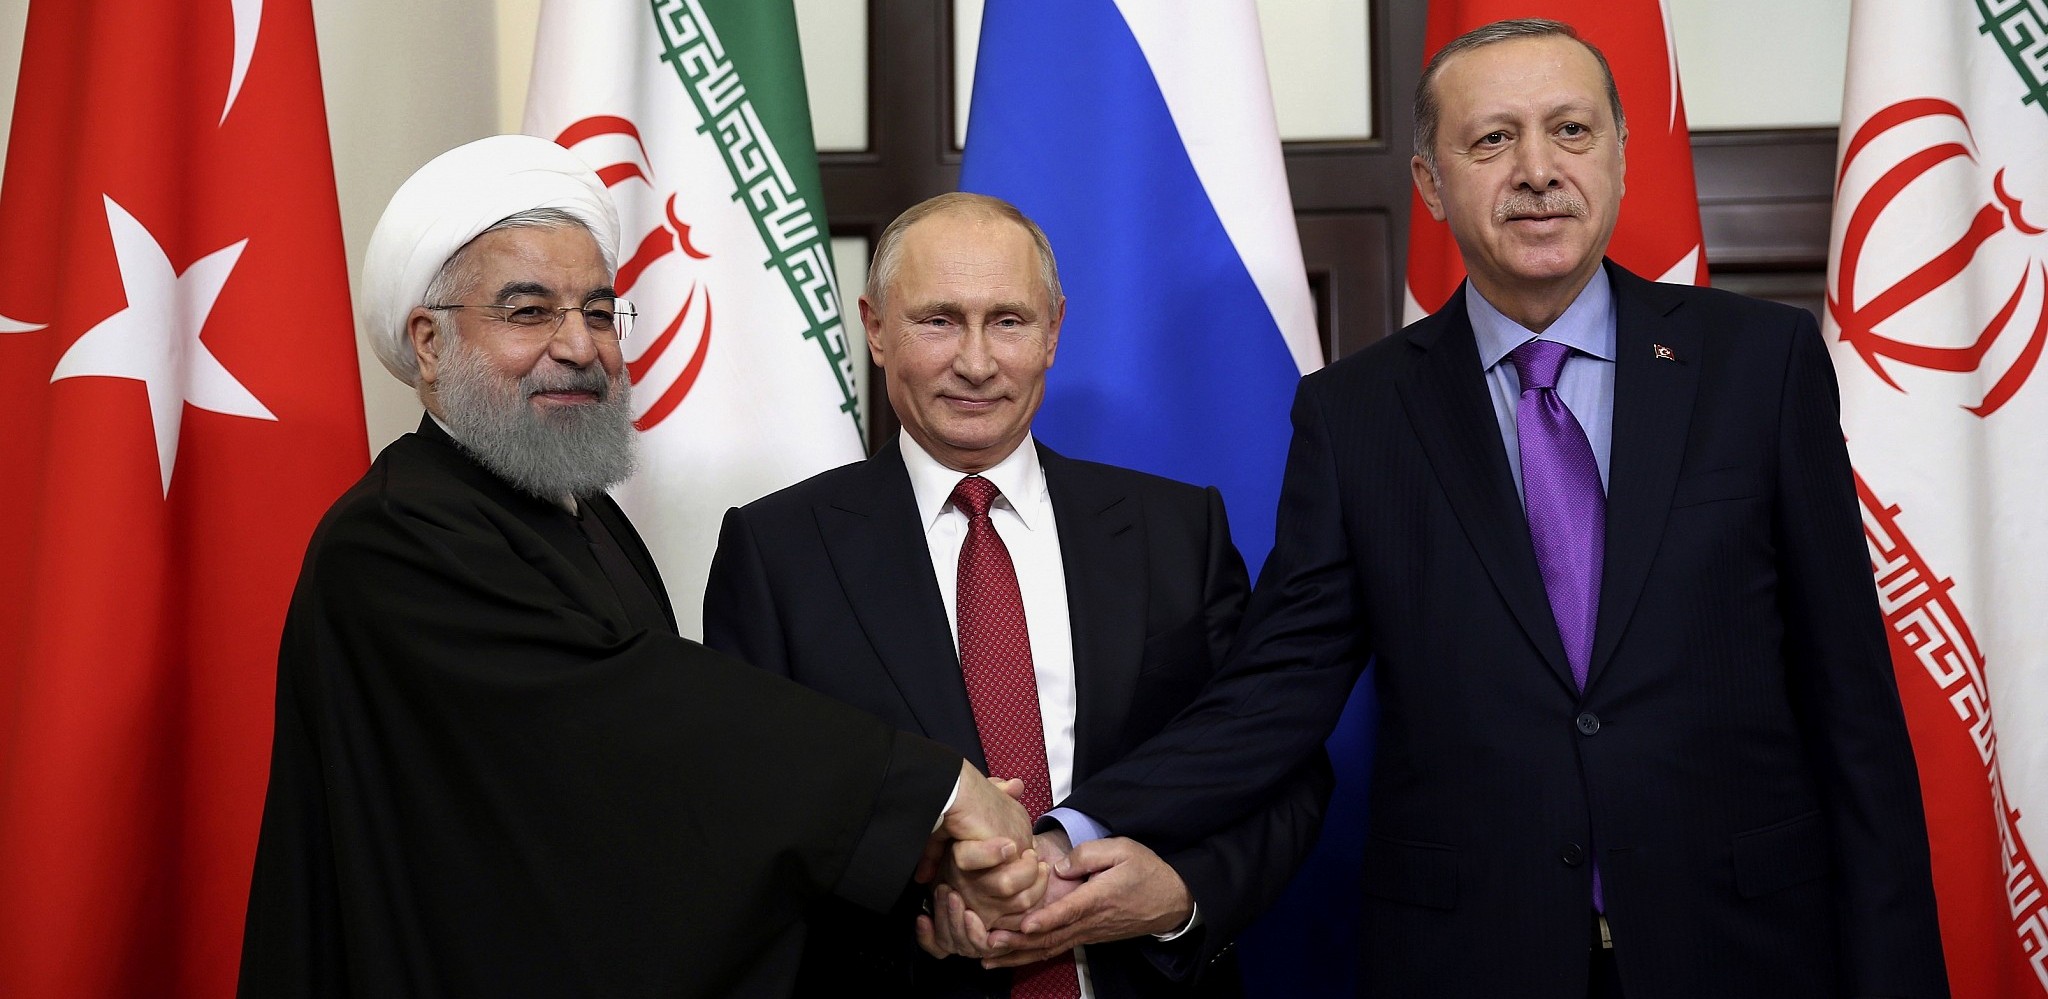 Ρ.Τ.Ερντογάν: «Οι ΗΠΑ θέλουν να μας μαχαιρώσουν πισώπλατα αλλά θα λάβουν την κατάλληλη απάντηση»